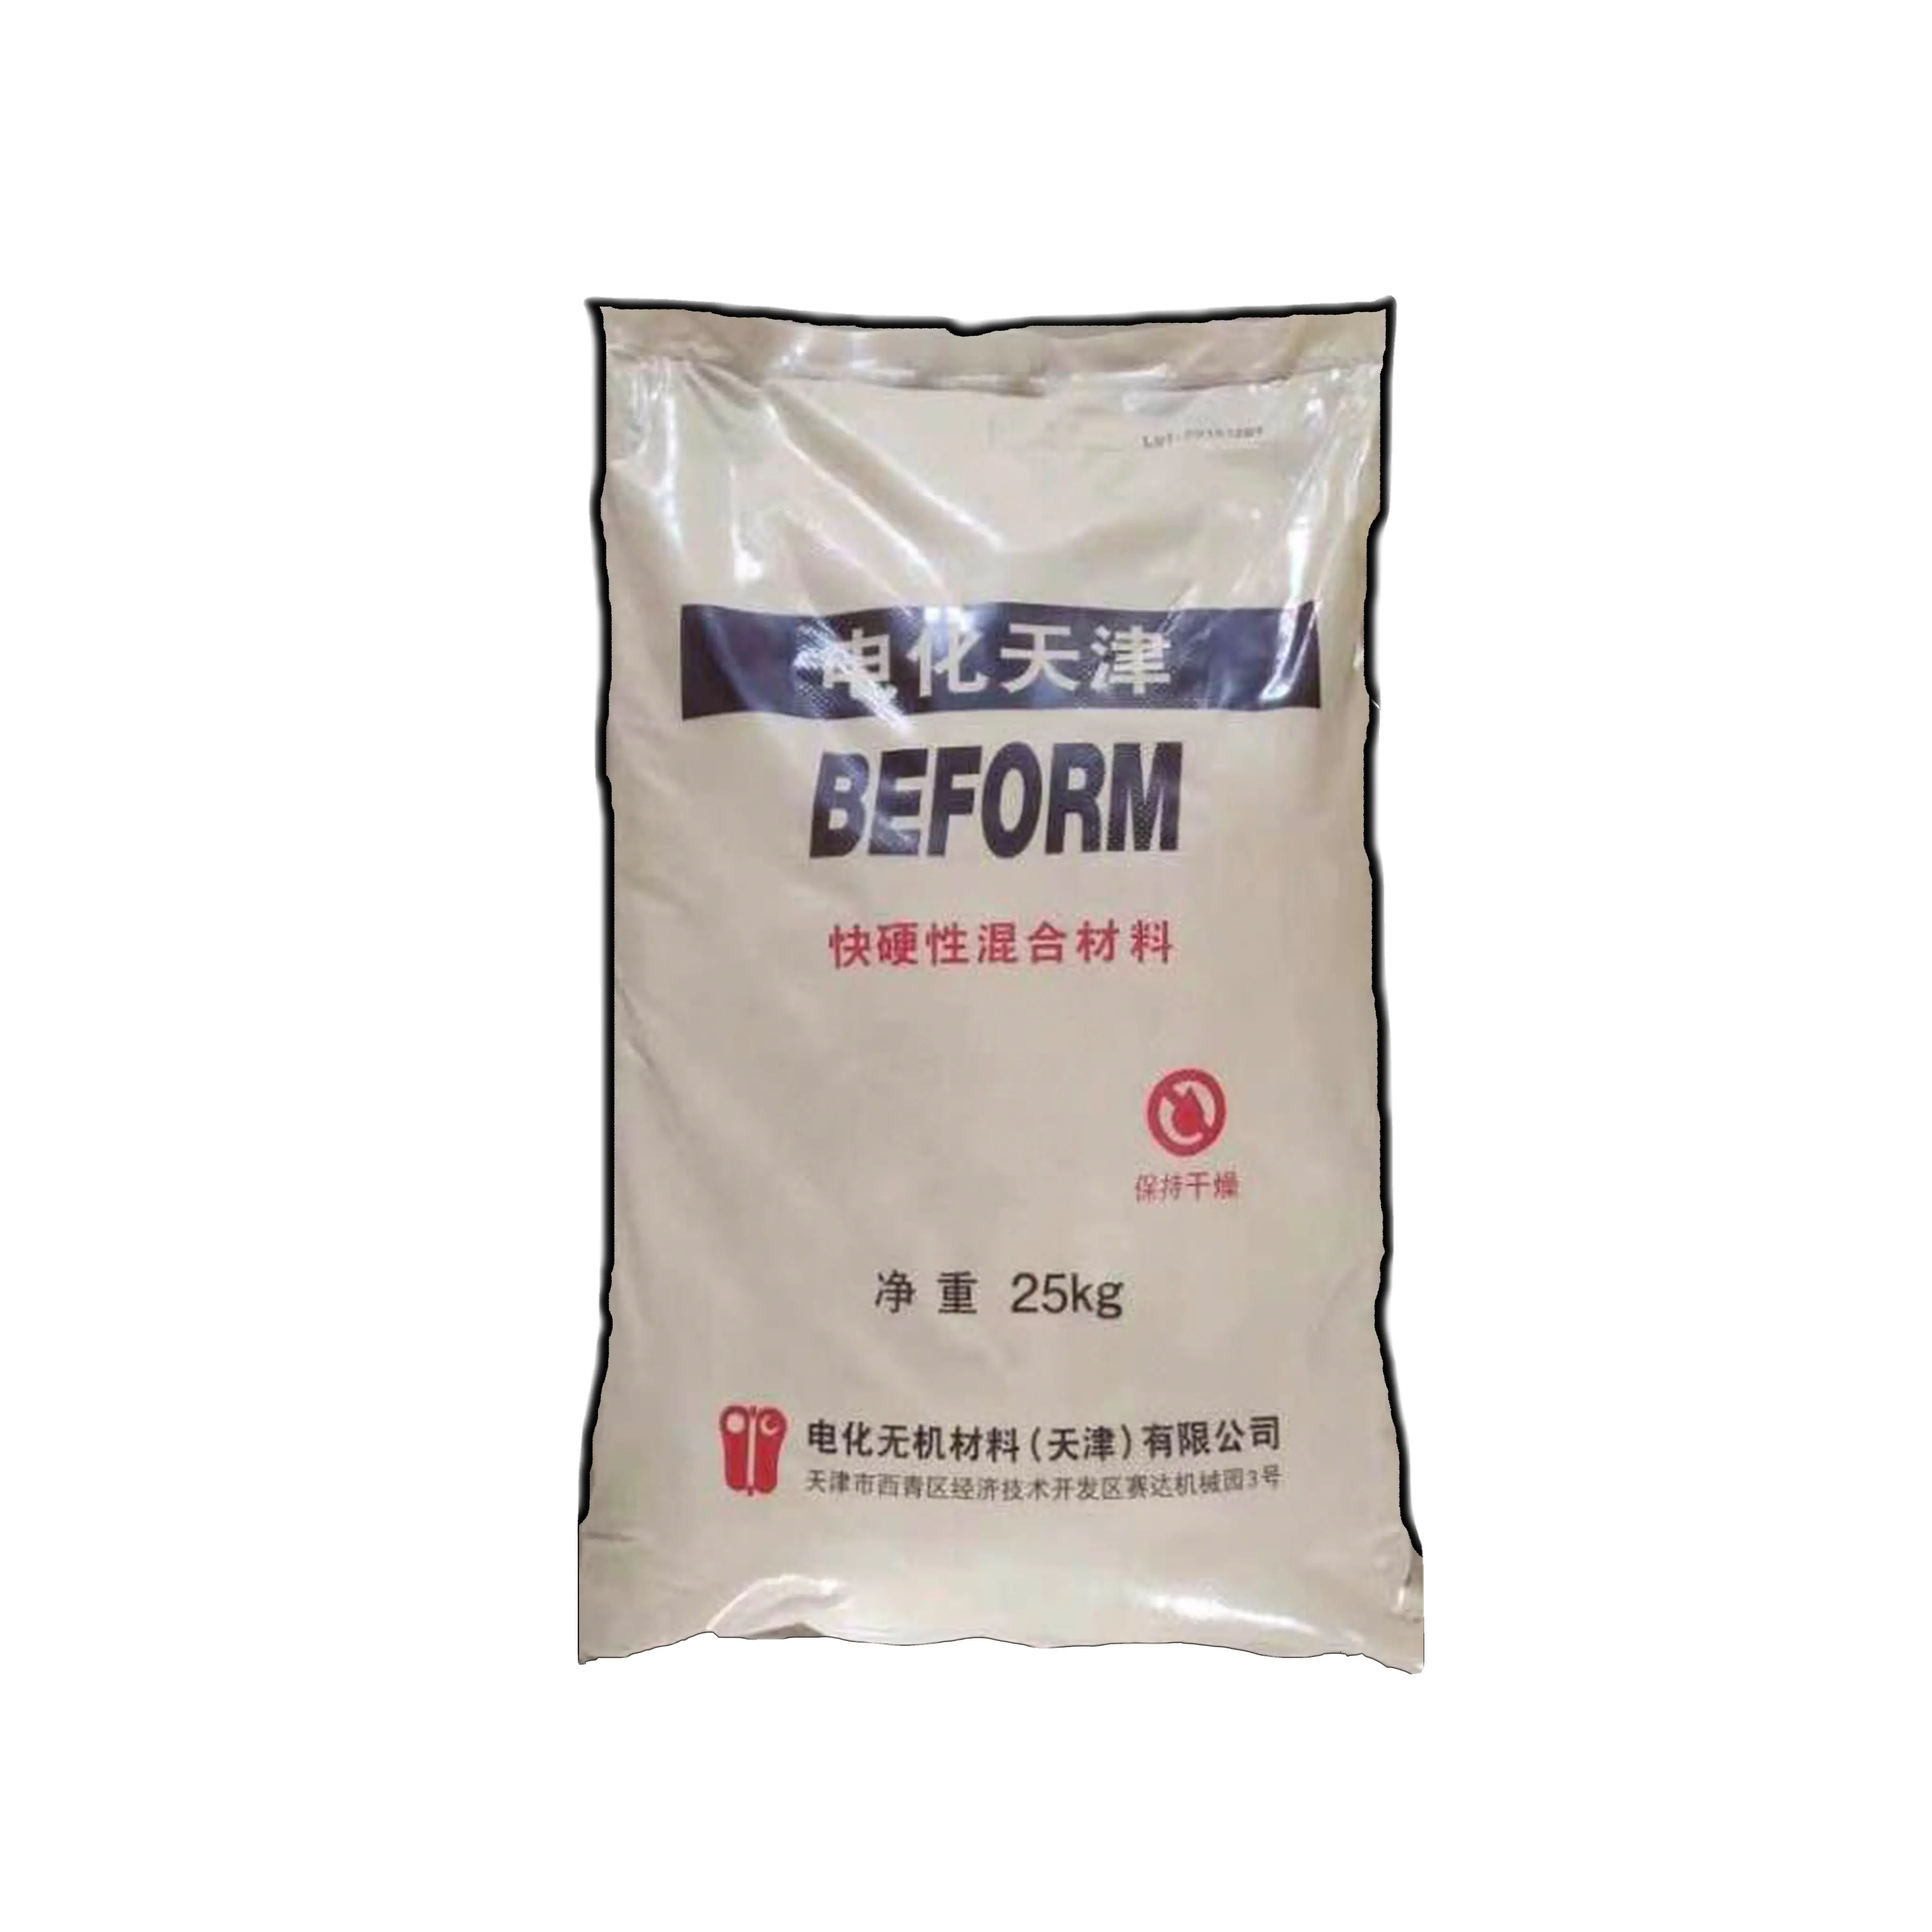 BEFORM-Material autonivelante para hormigón, aditivo de endurecimiento rápido cementoso